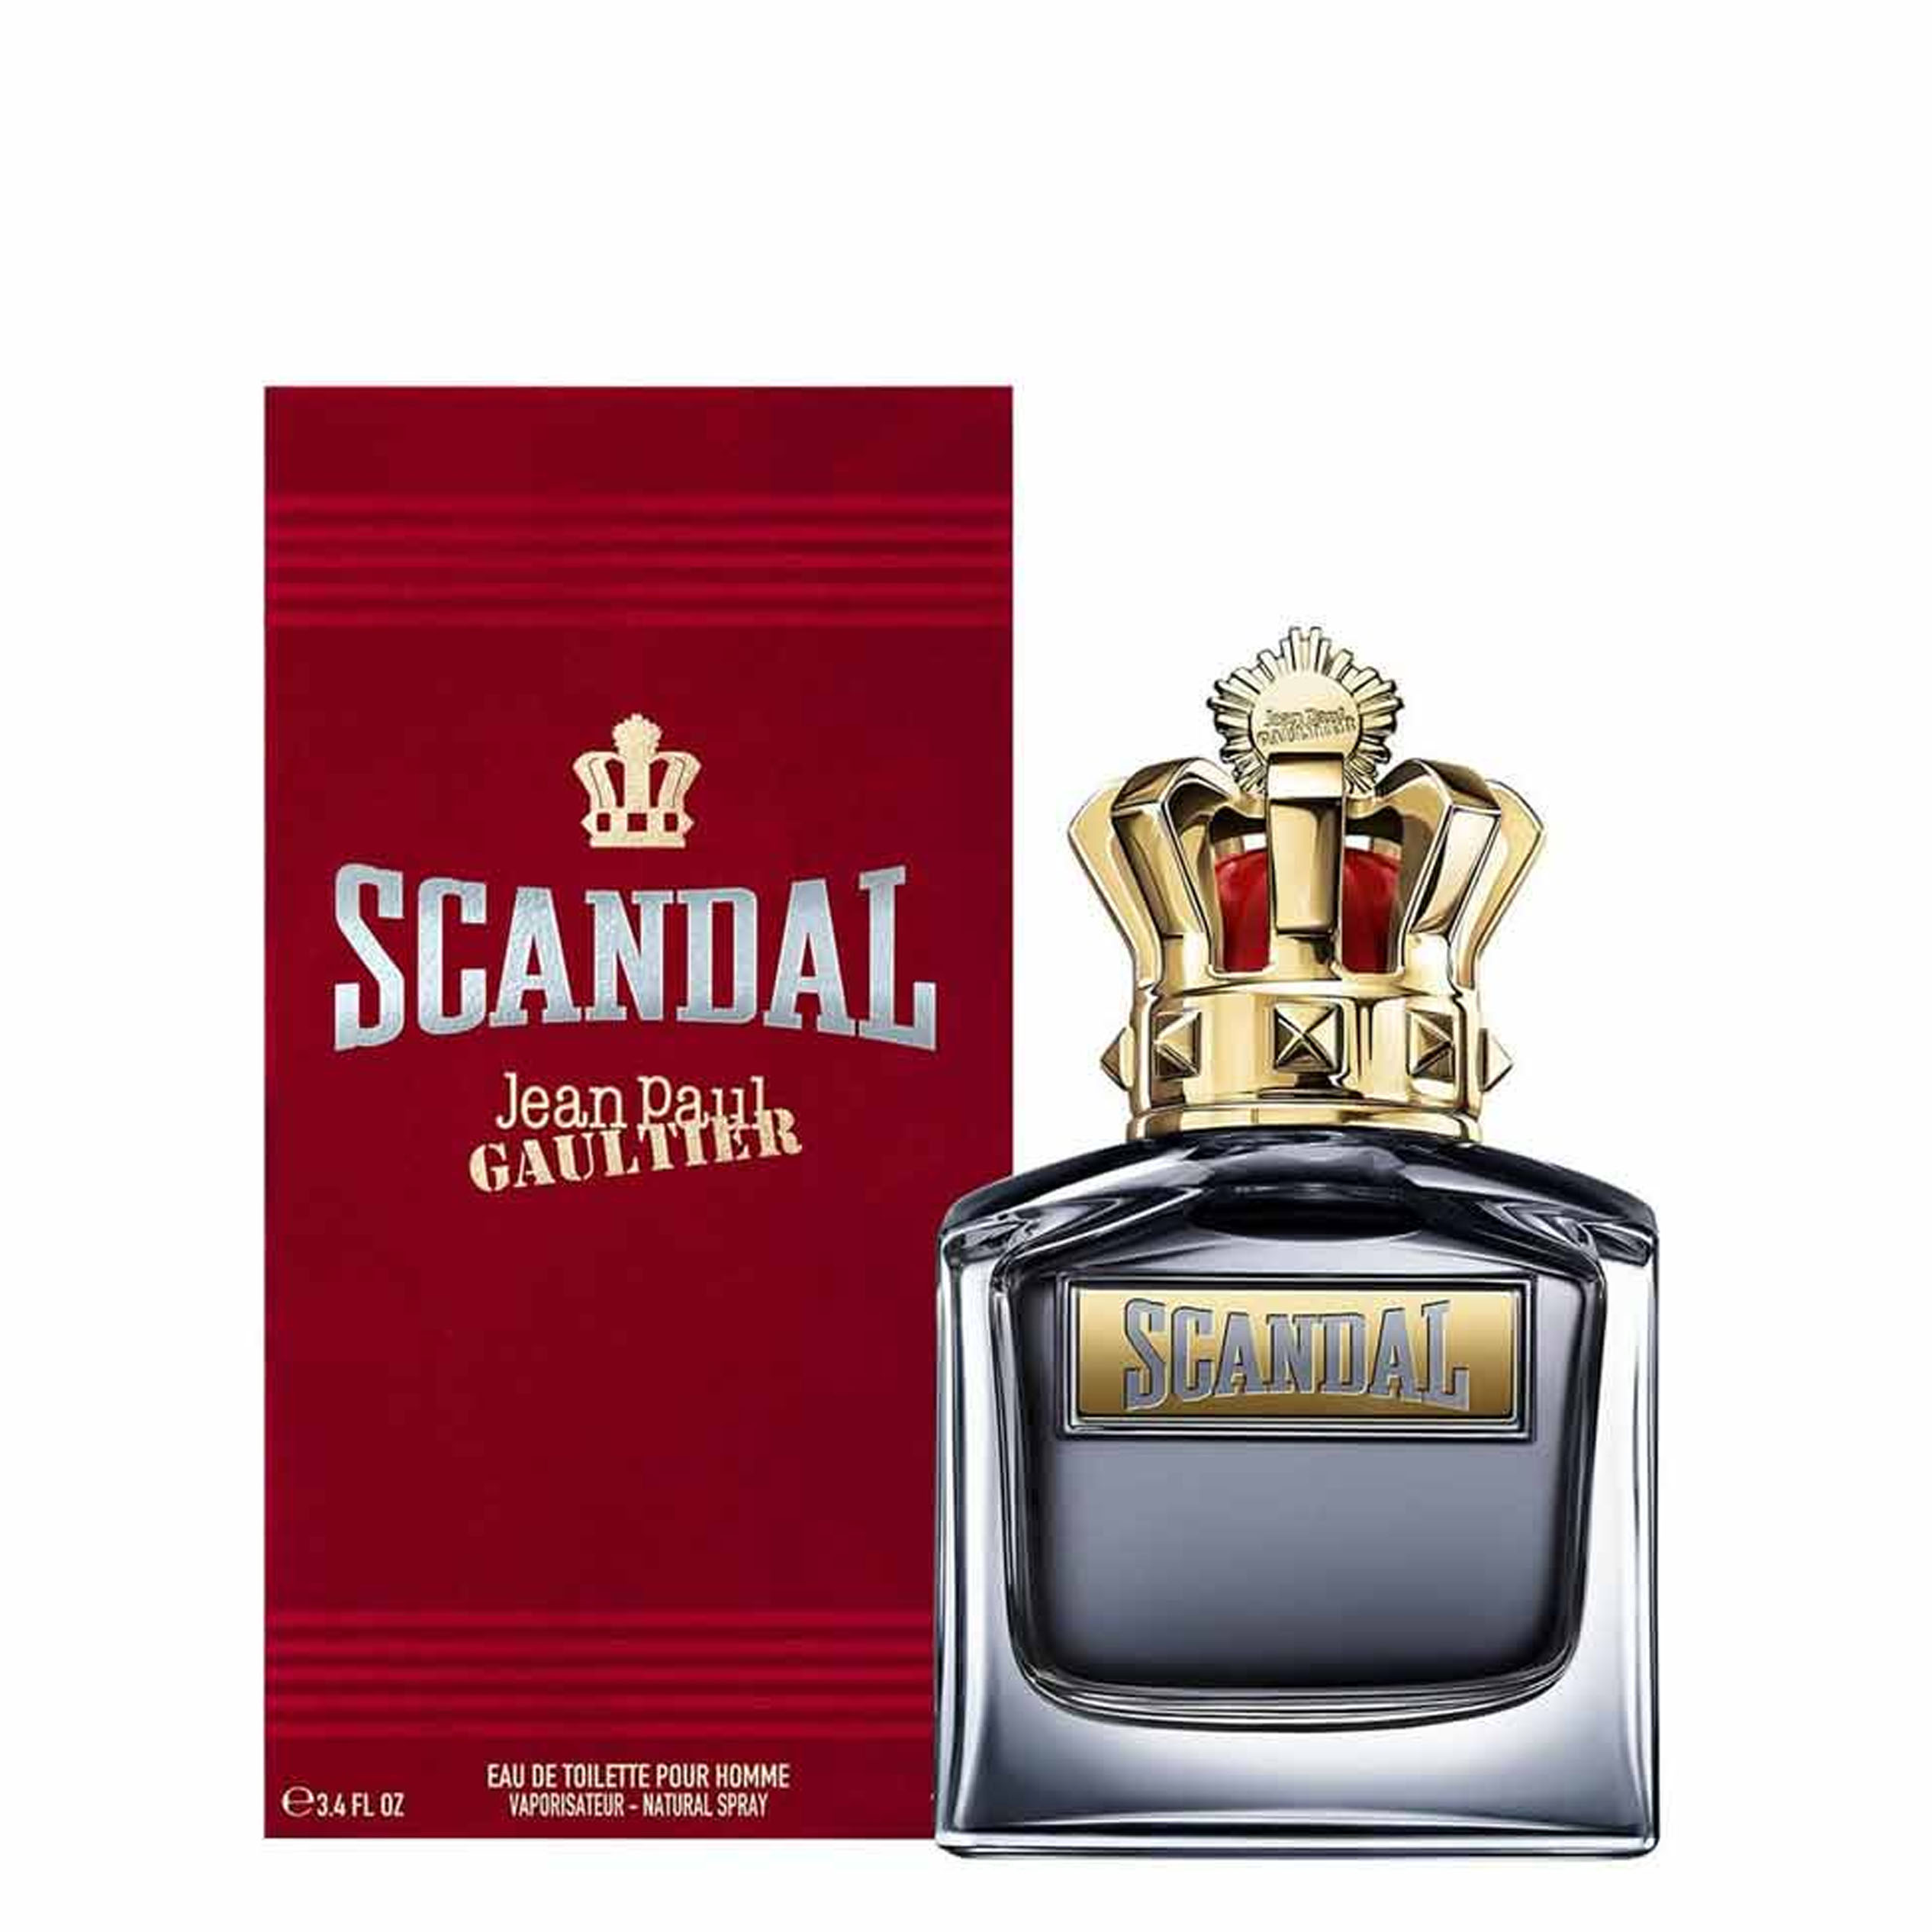 Perfume Scandal Pour Homme Jean Paul Gaultier     (Replica Con Fragancia Importada)- Hombre